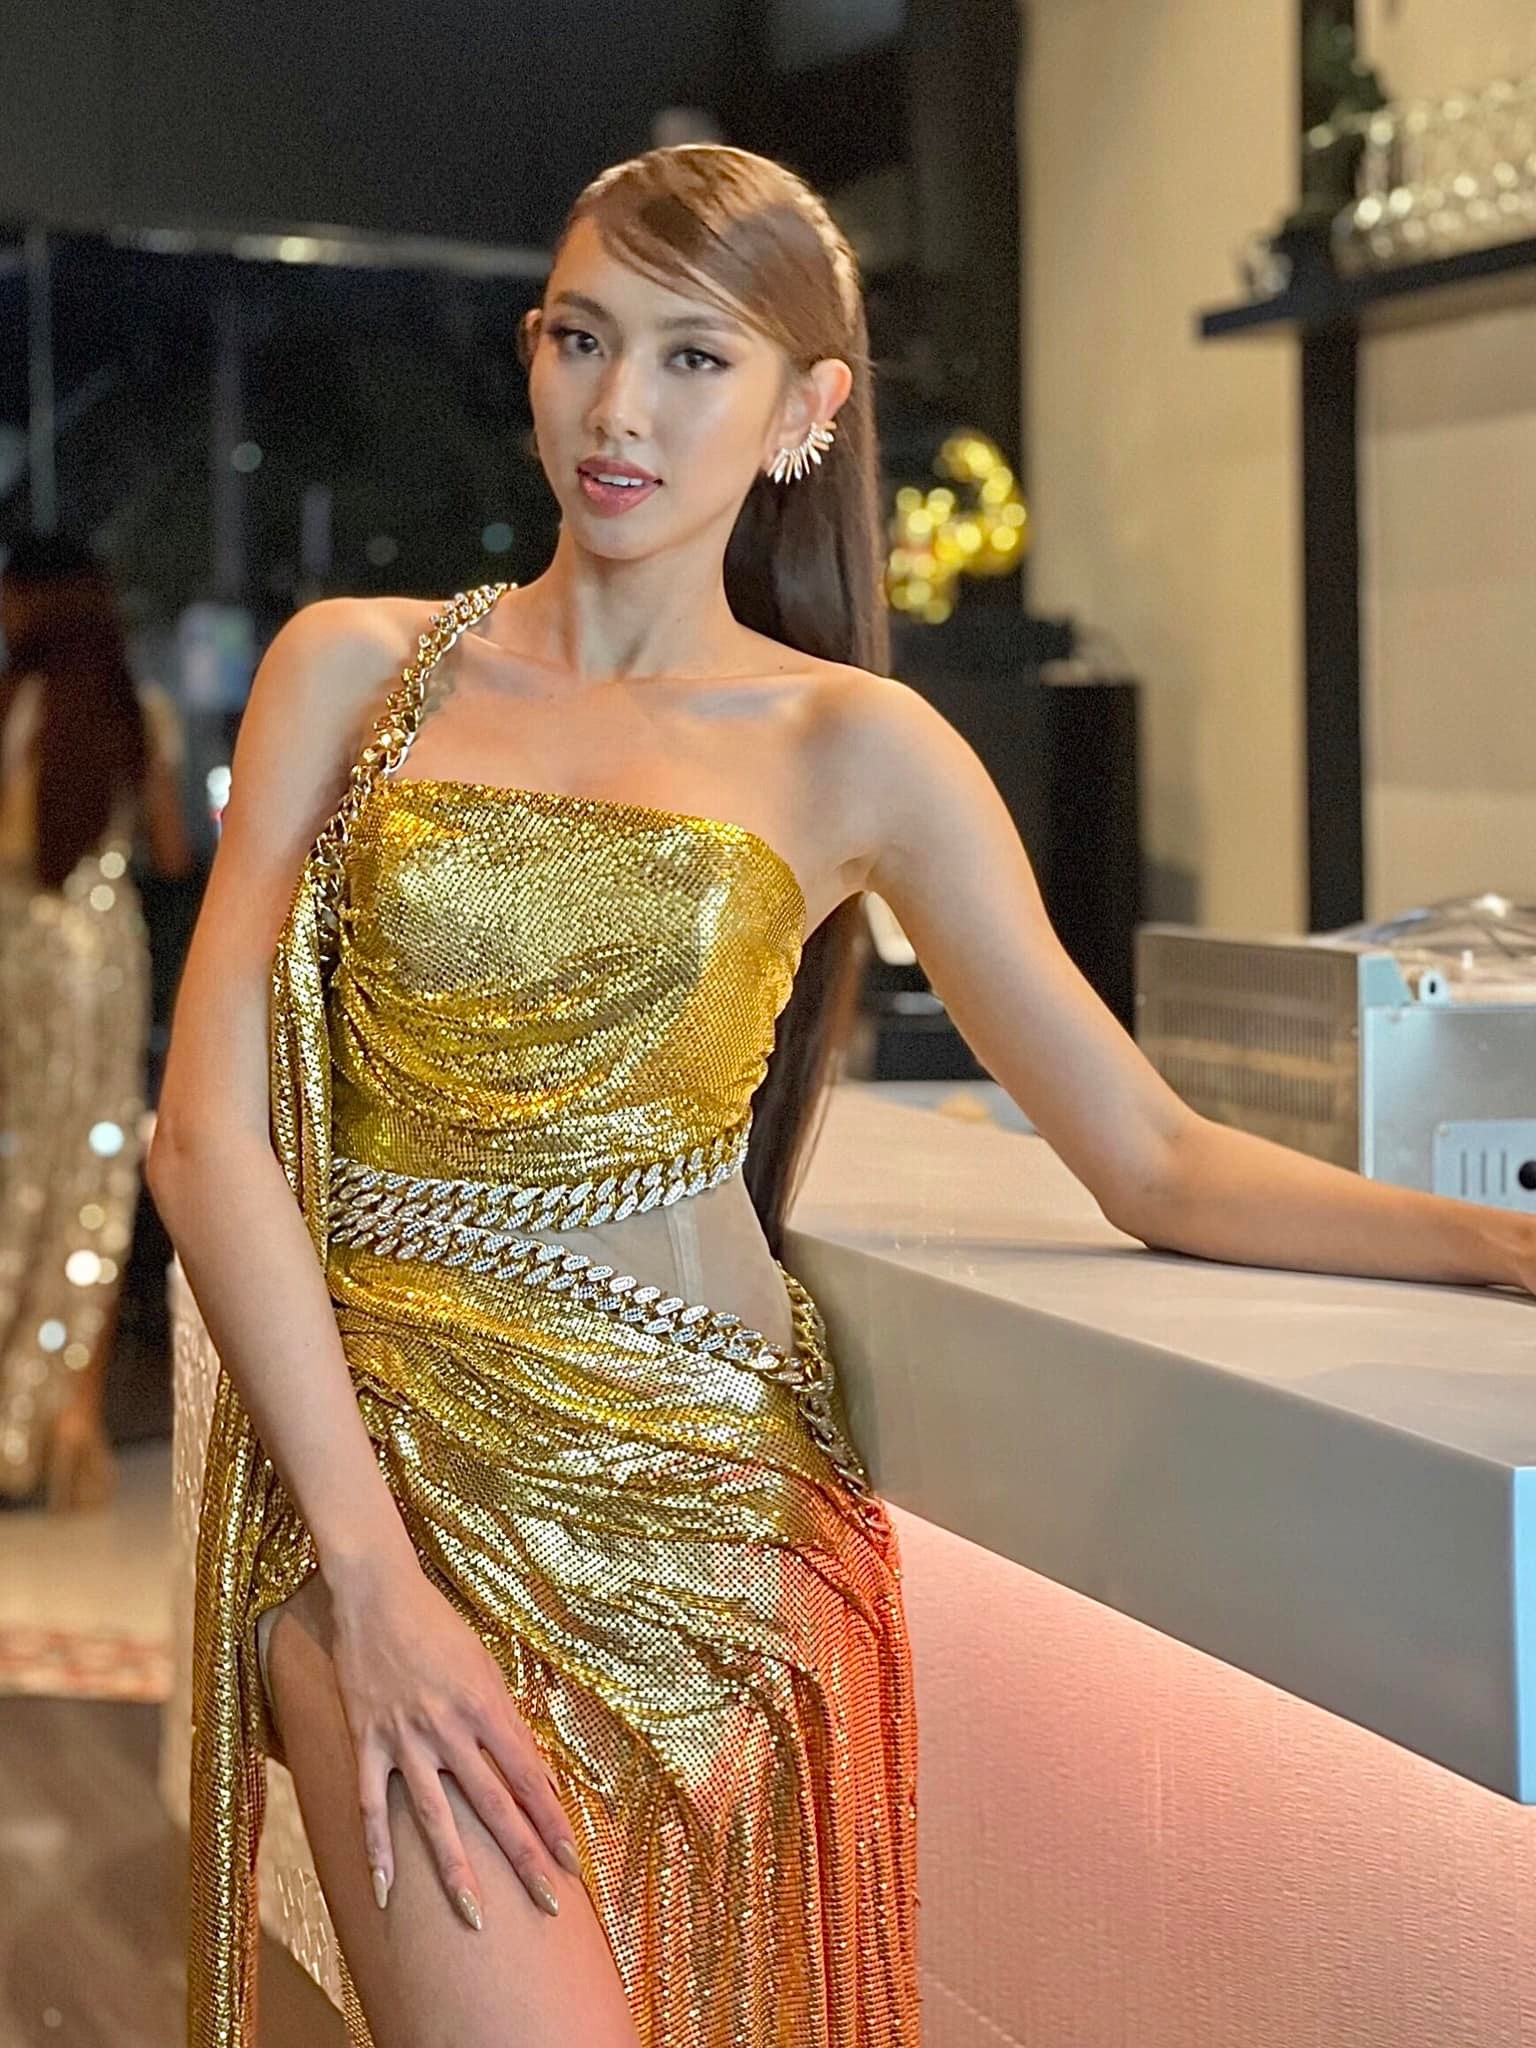 Chiếc váy vàng bling bling kết hợp với mái tóc dài thẳng cùng gu trang điểm nhẹ nhàng khiến Thuỳ Tiên nổi bật mà vẫn tinh tế.